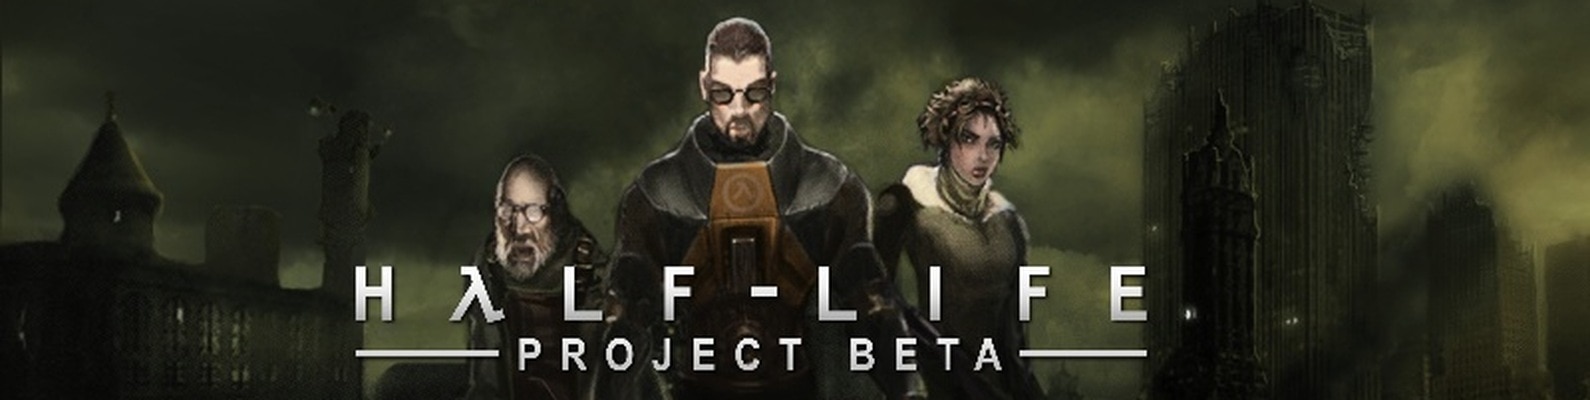 Steam Workshop::Alyx - Half-Life 2, BETA